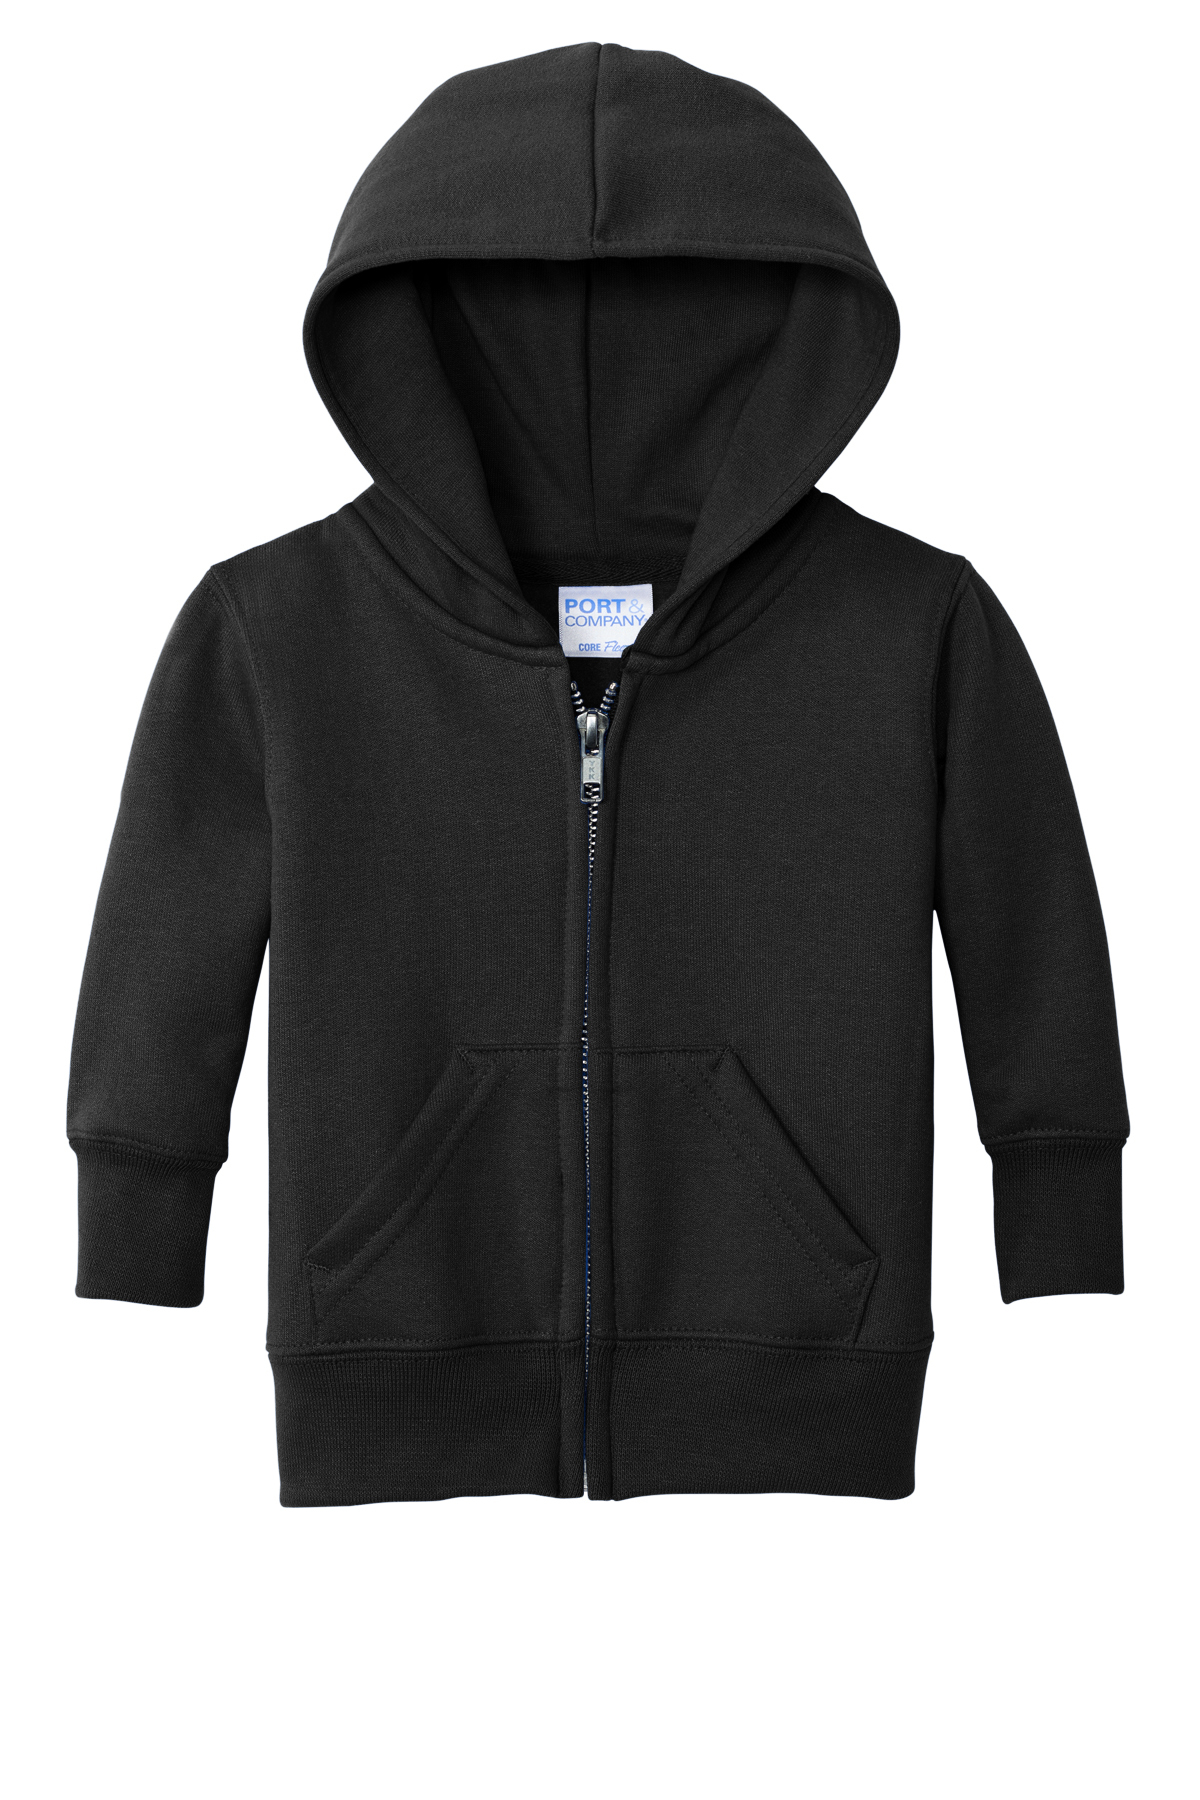 Port & Company Infant Core Fleece Full-Zip Hooded Sweatshirt | Product ...